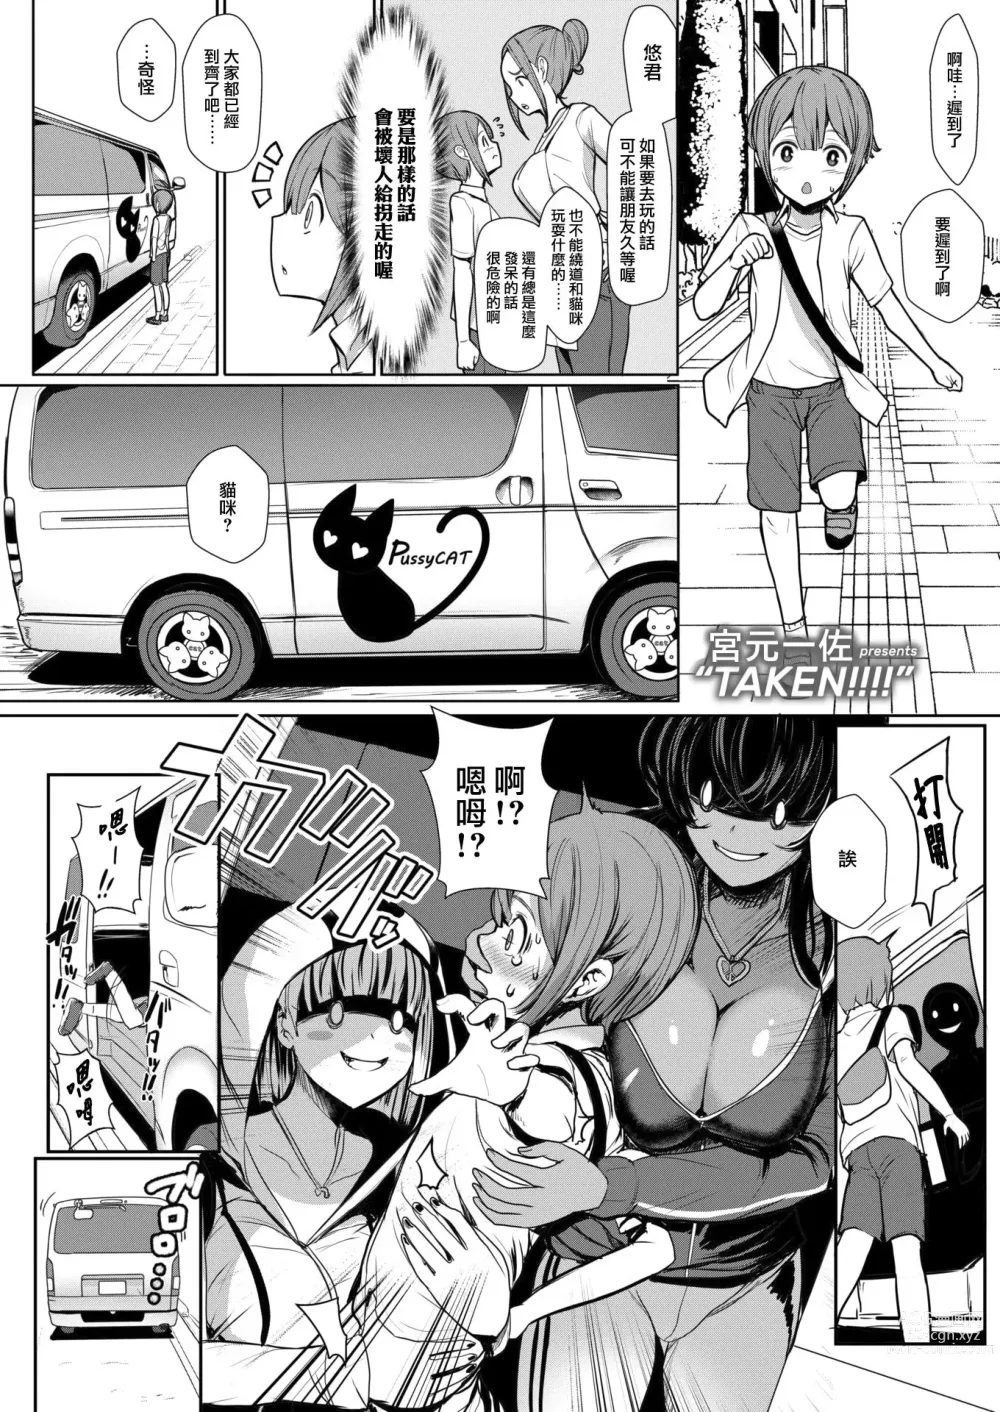 Page 1 of manga TAKEN!!!!